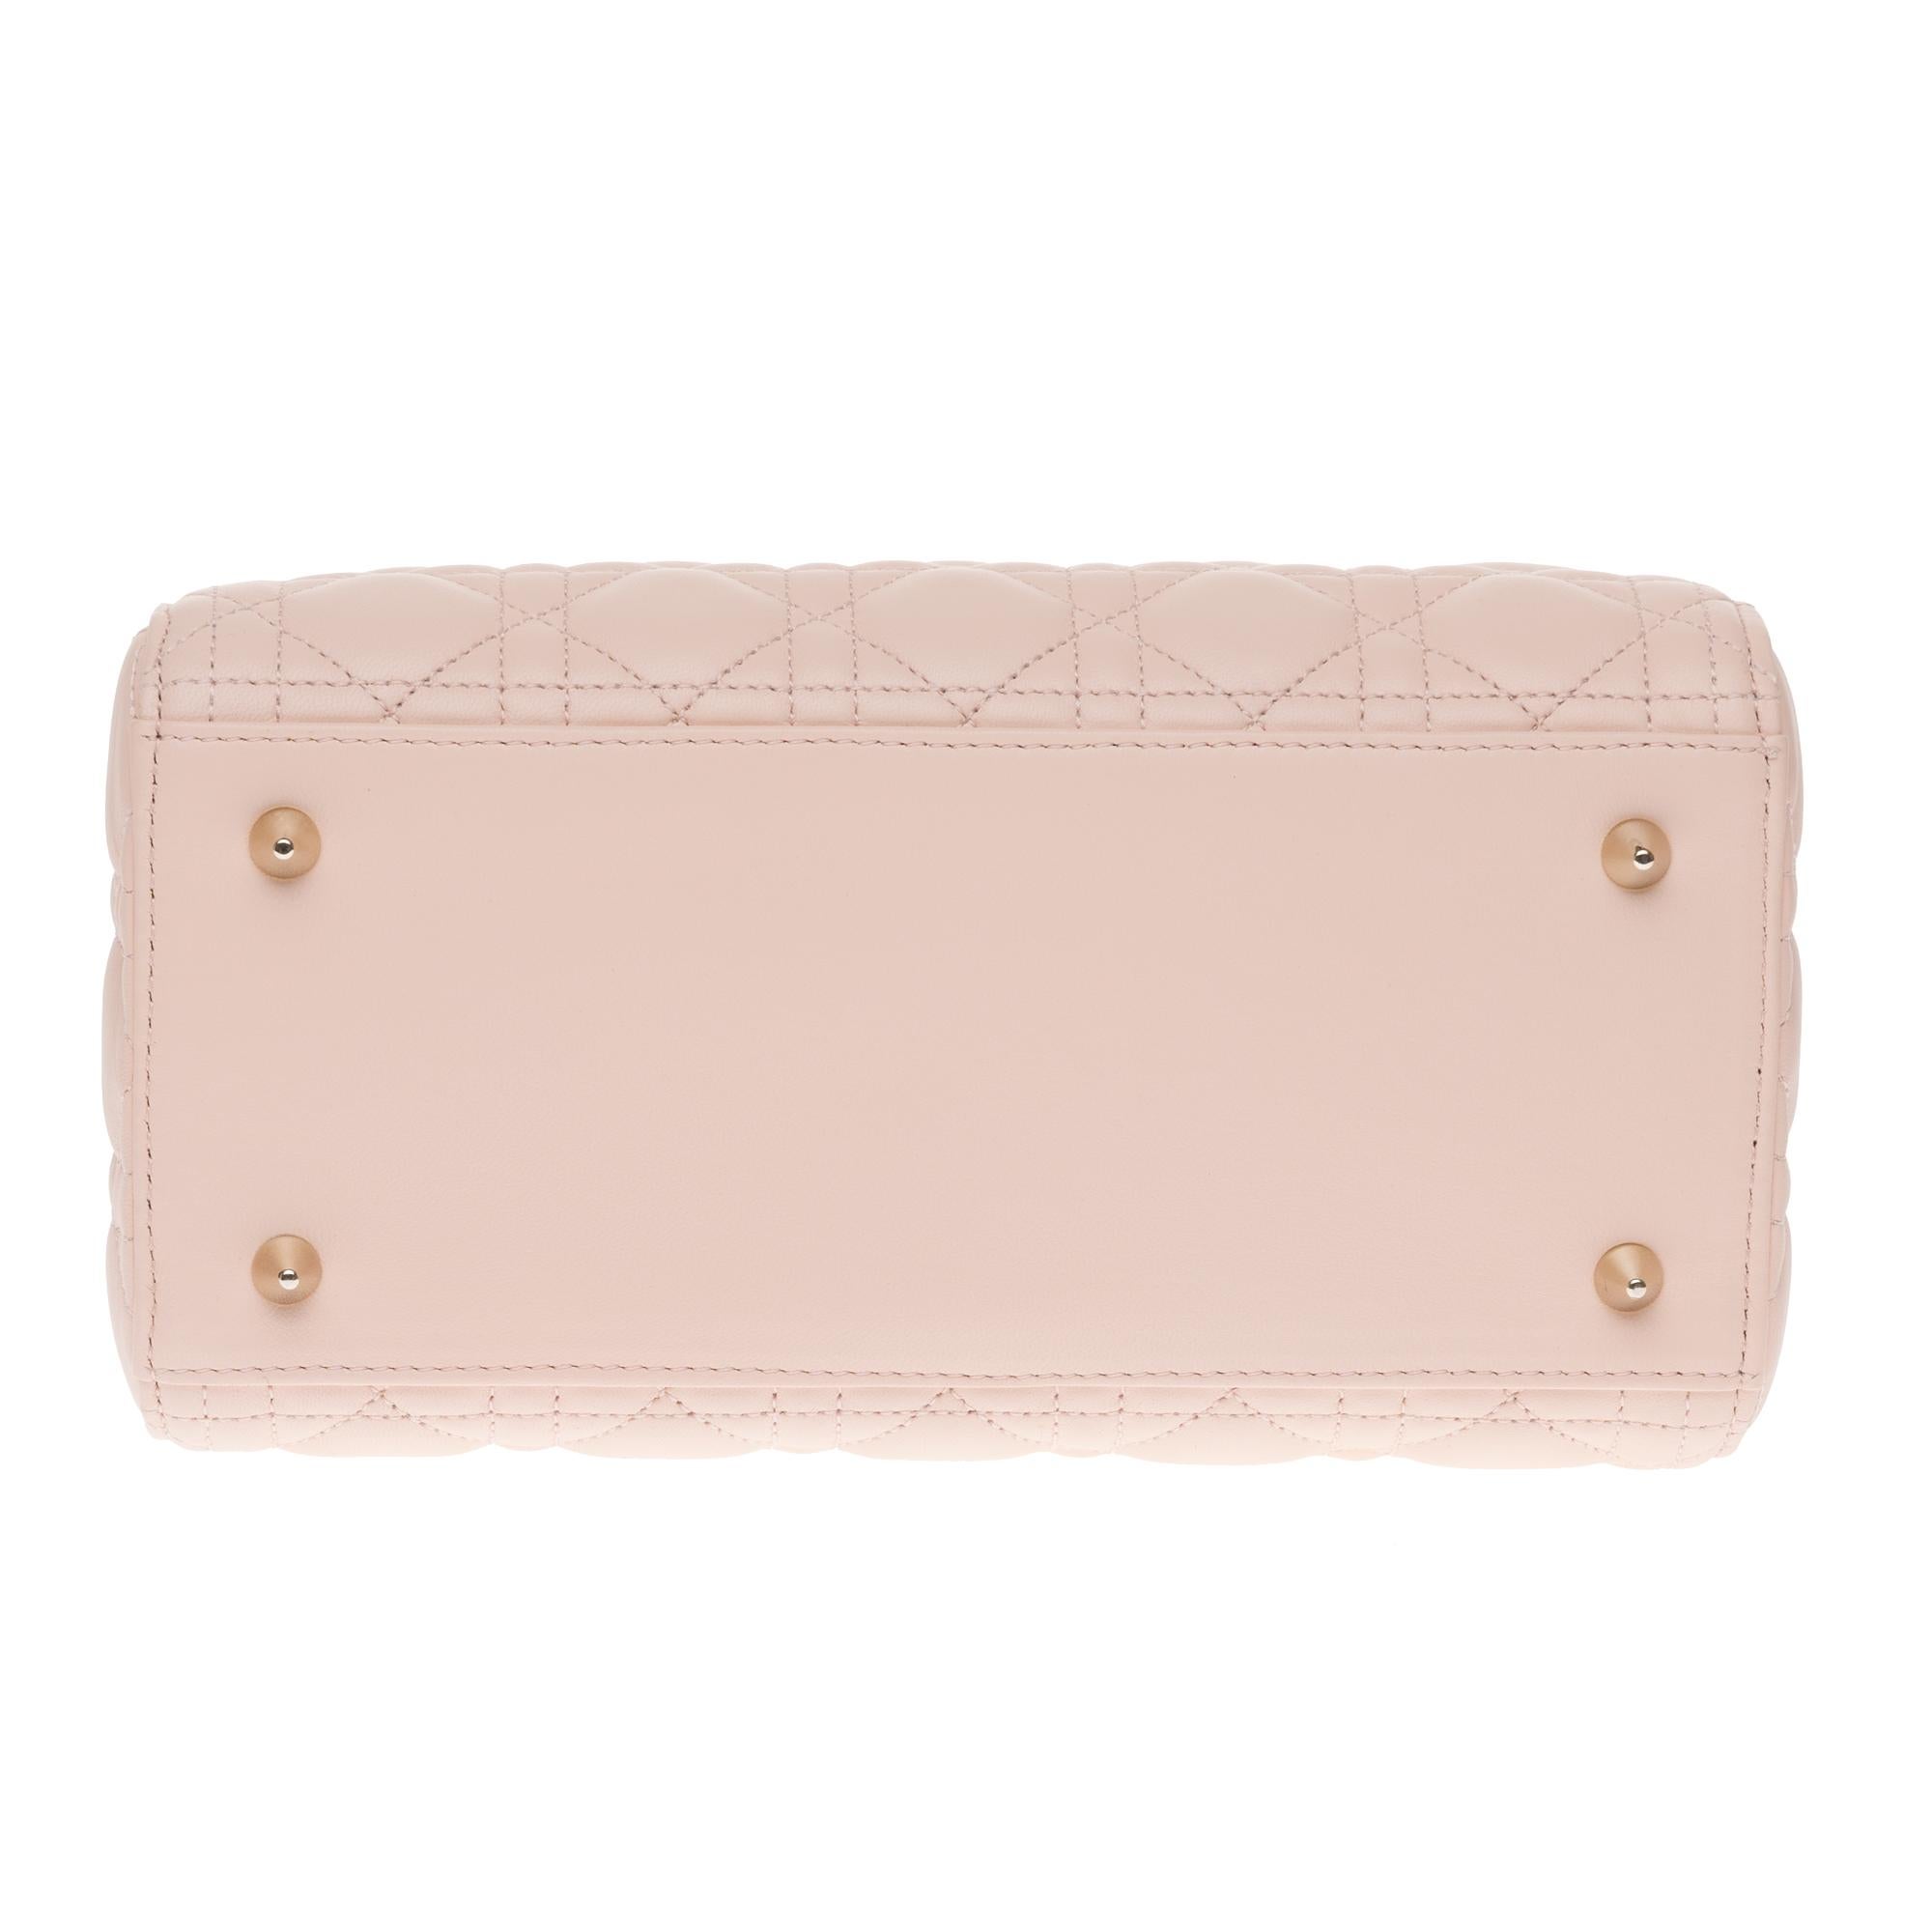  Christian Dior Lady Dior MM (Medium size) handbag in Pink cannage leather, GHW 3